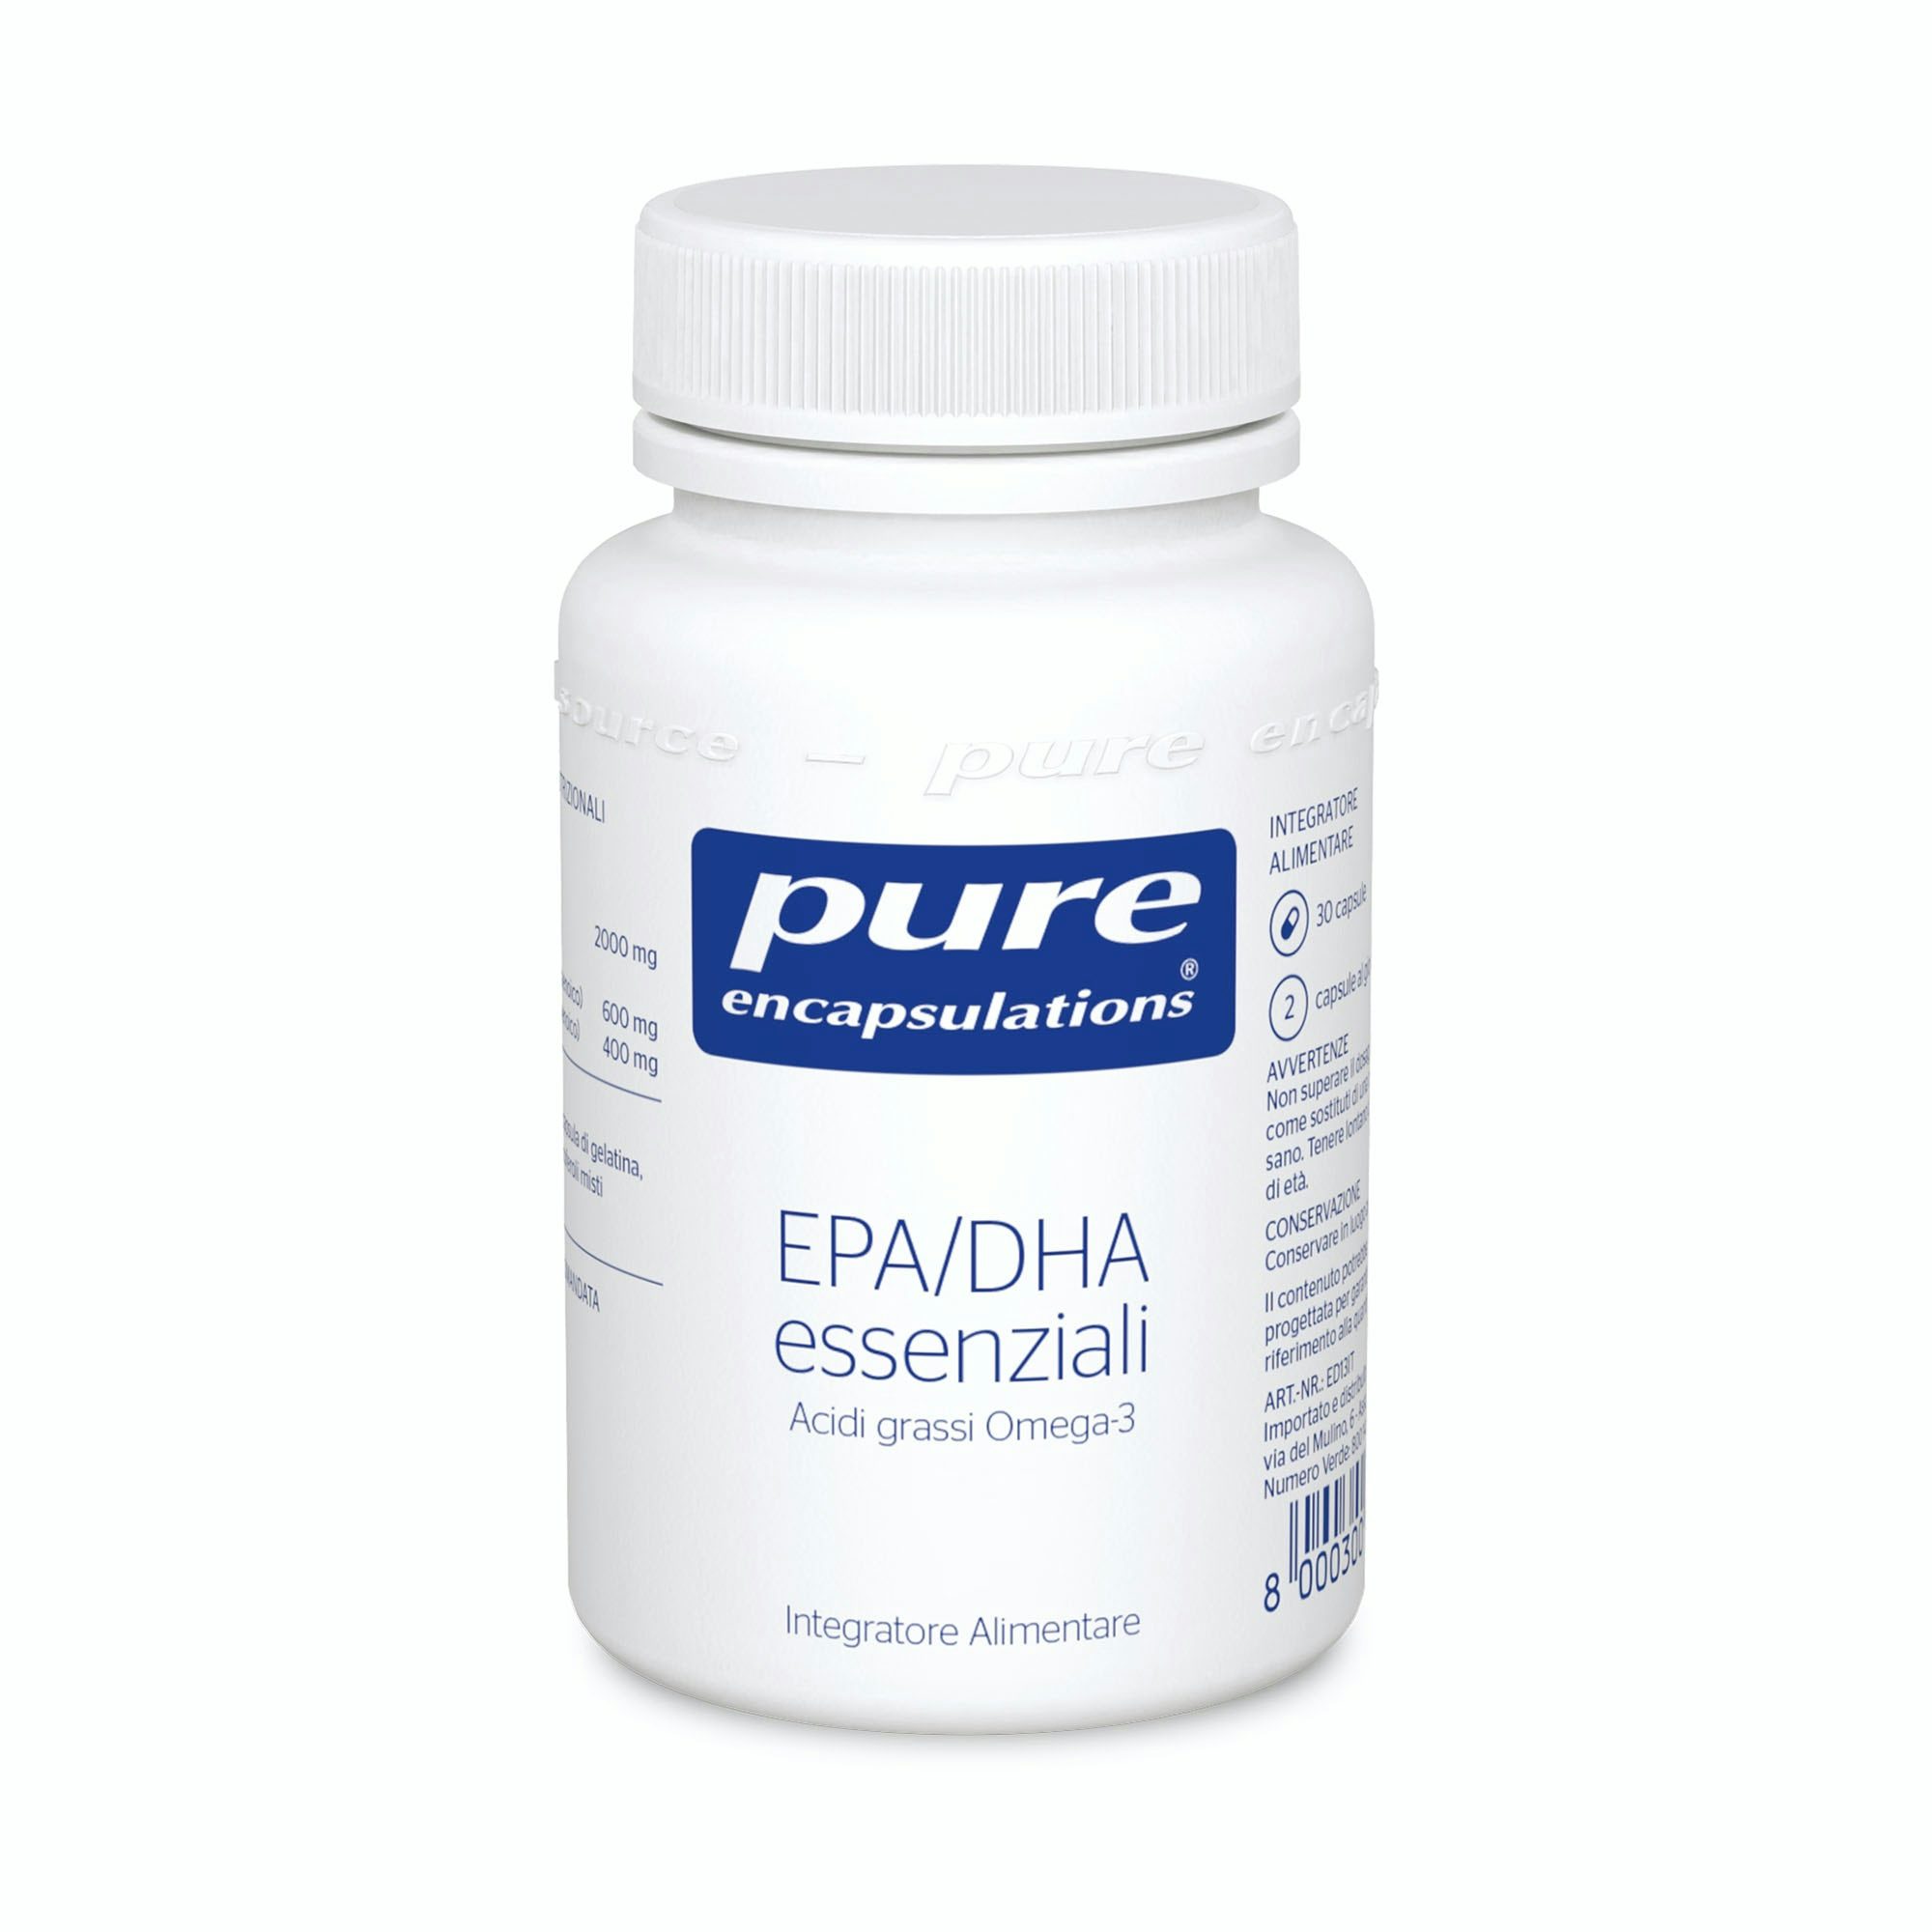 EPA/DHA ESSENZIALI contro il colesterolo cattivo 0